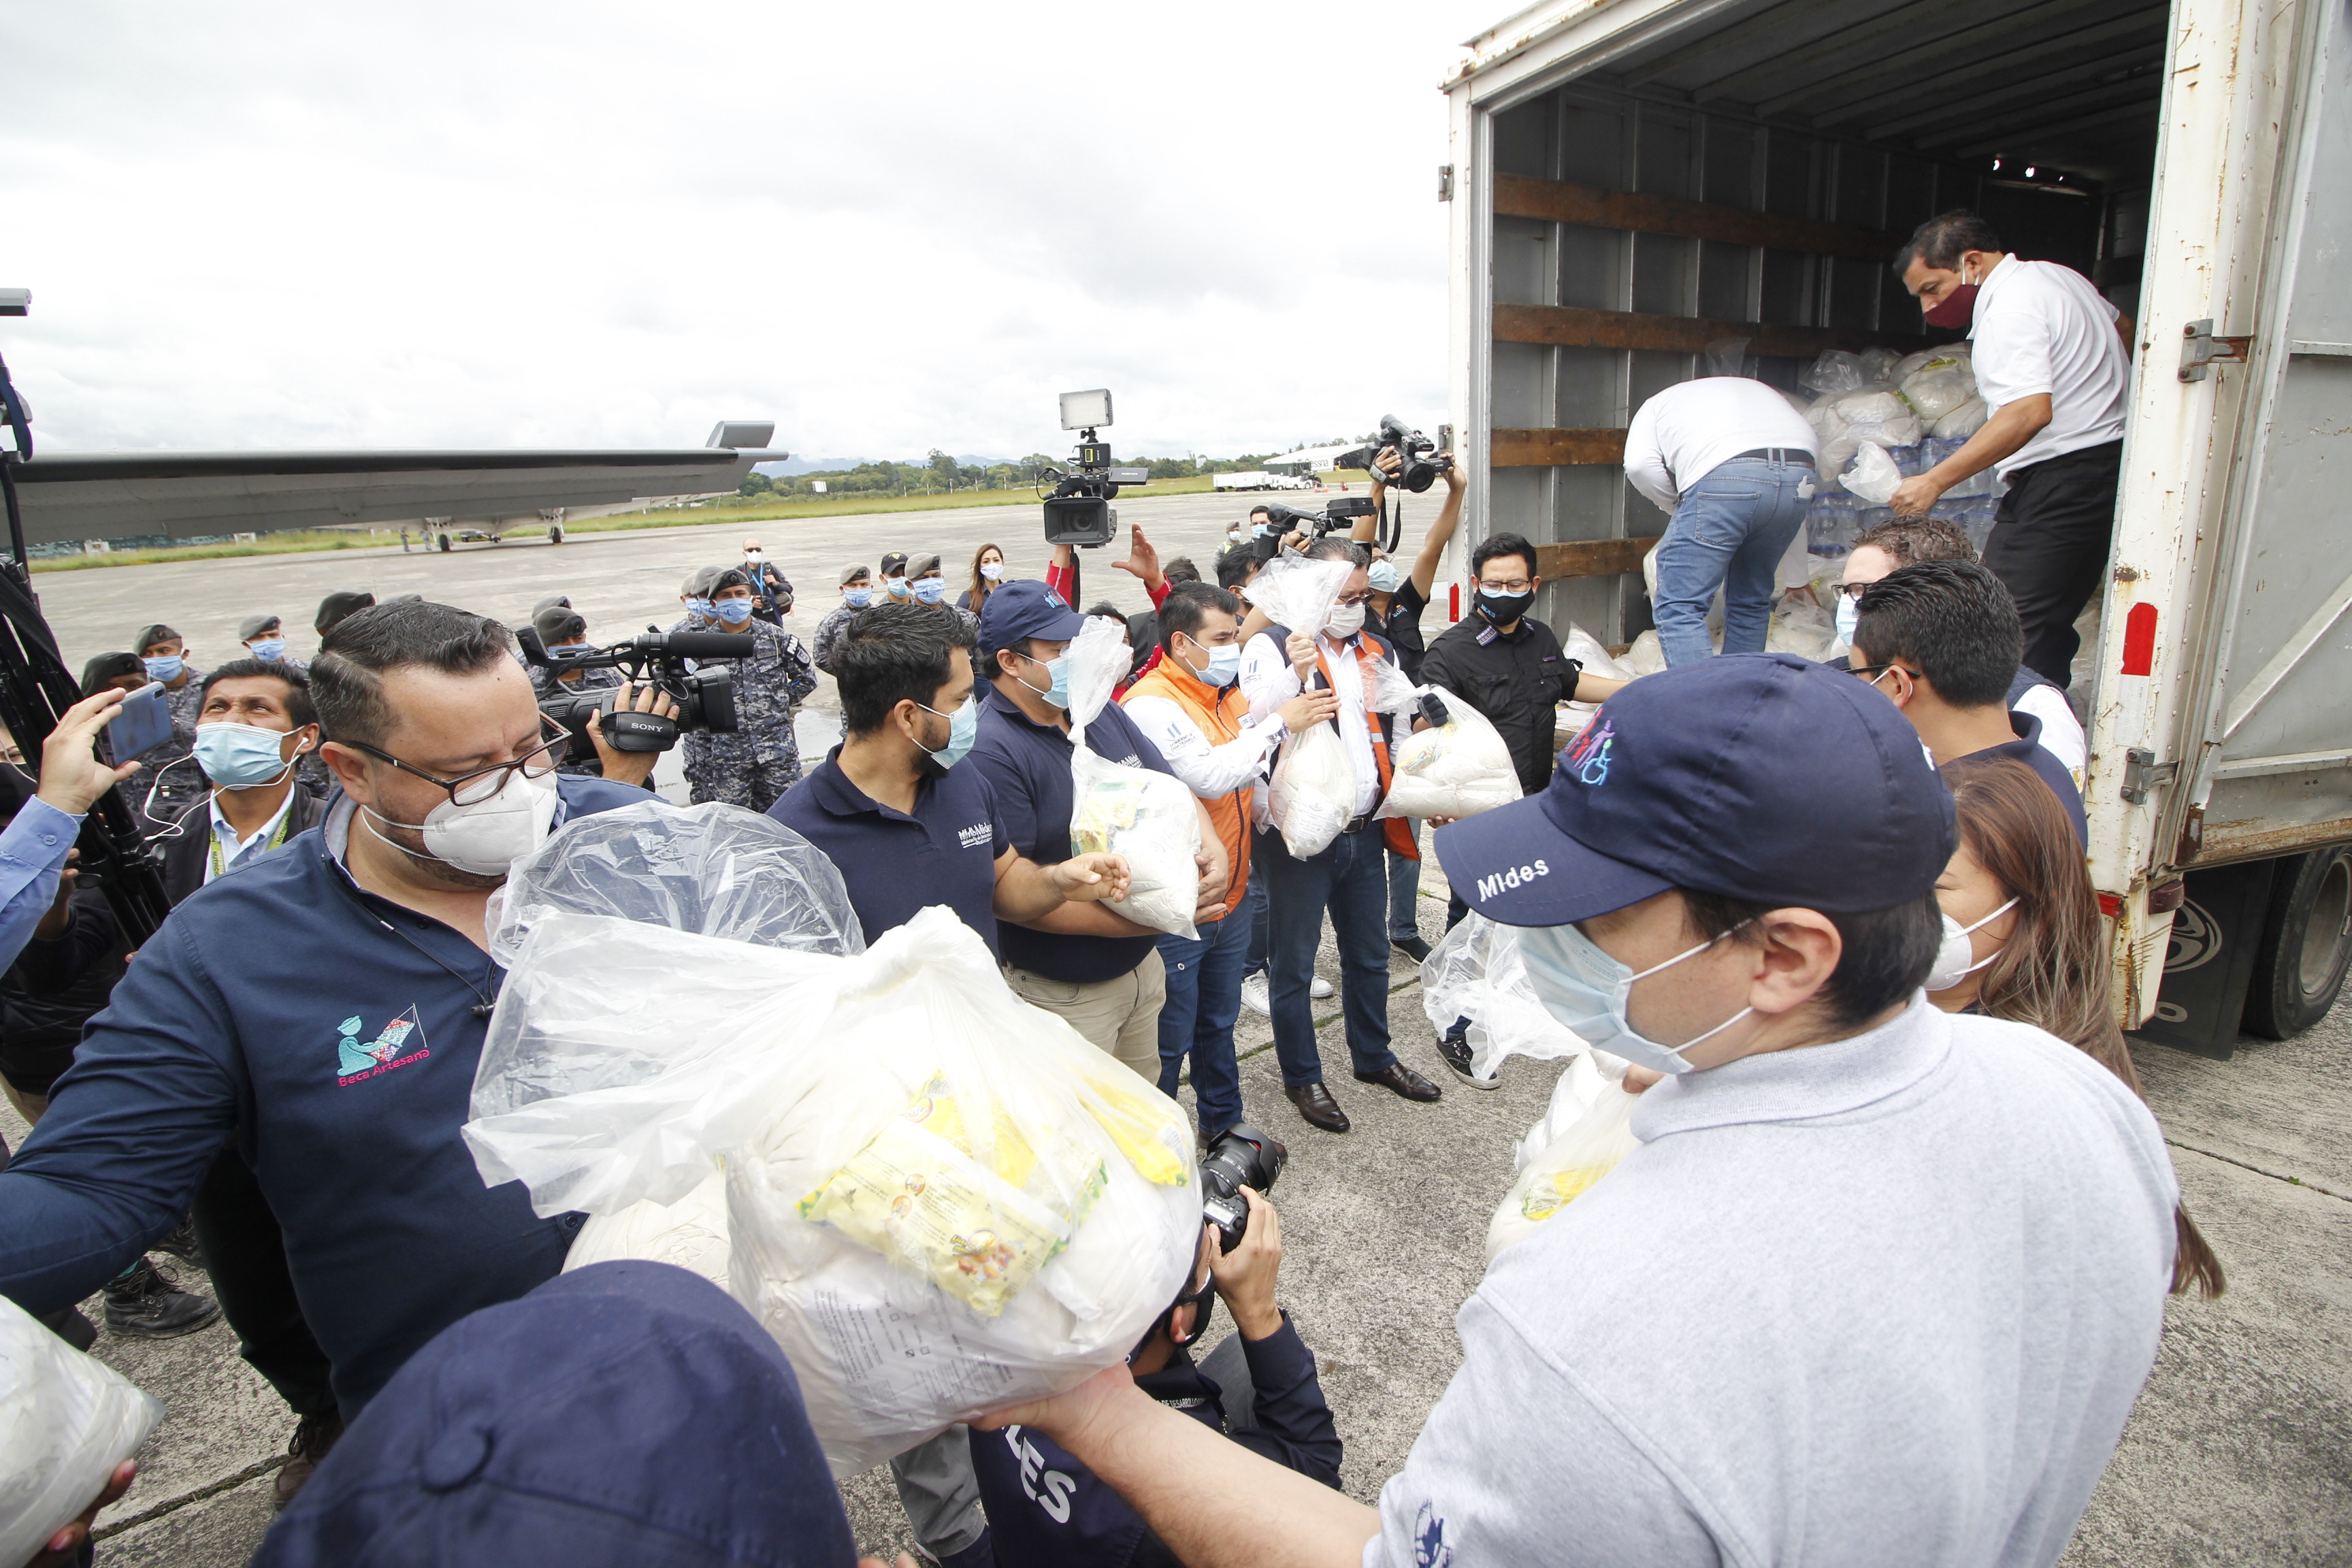 El ministerio de Desarrollo Social responde de forma inmediata y entrega alimentos por vía terrestre y aérea a los guatemaltecos damnificados. Foto Prensa Libre: Imer Lucero